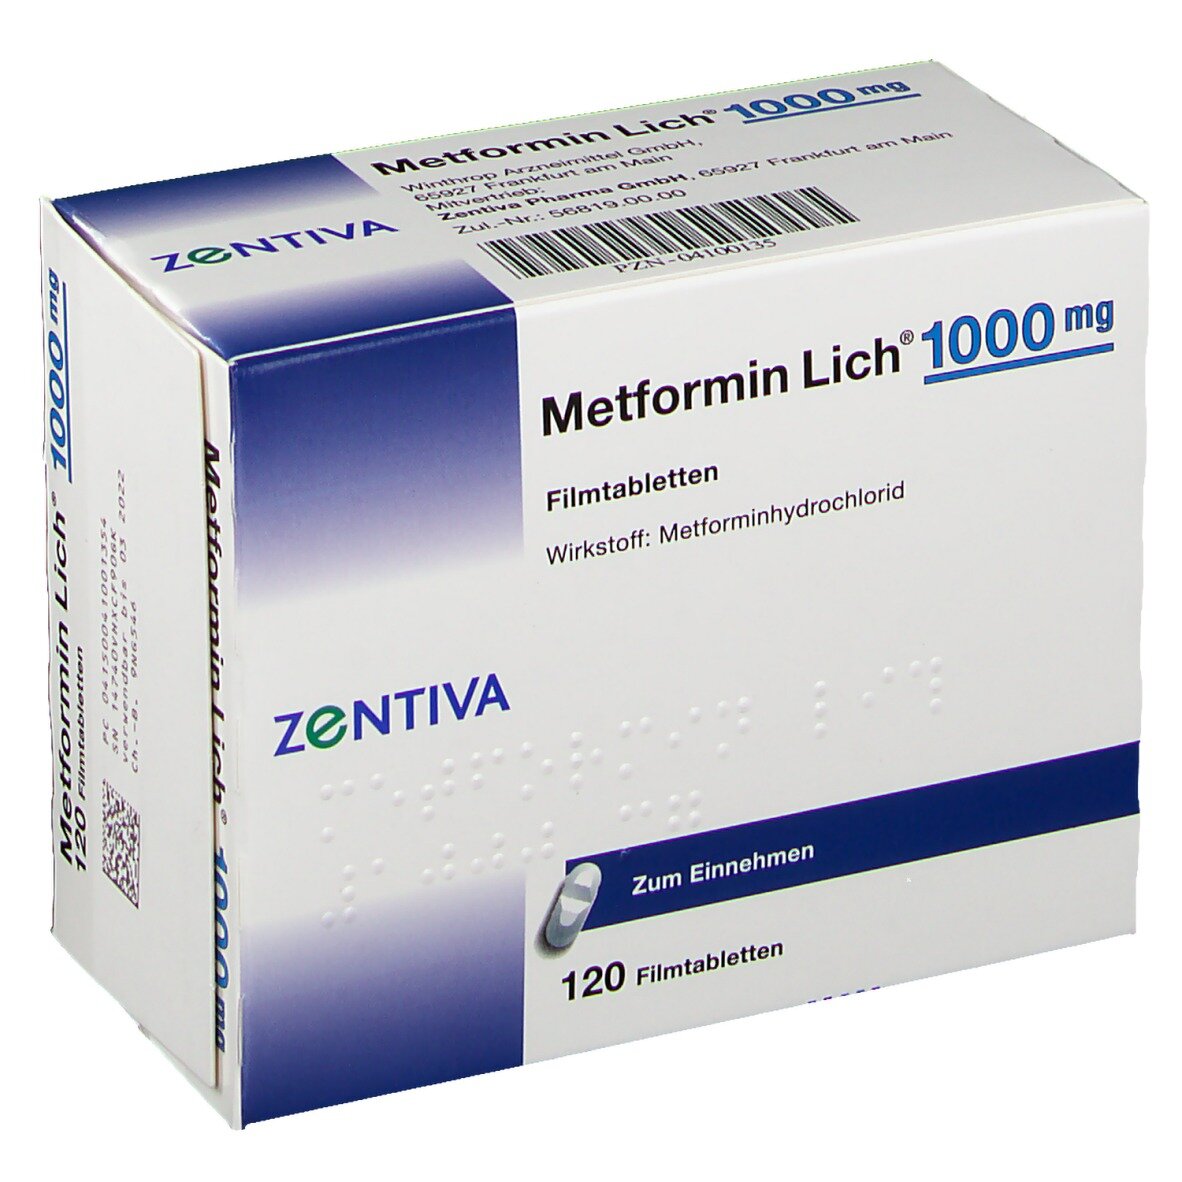 Когда принимать метформин вечером. Метформин 500. Метформин 500 мг синяя упаковка. Метформин 1000. Метформин 1000 мг.